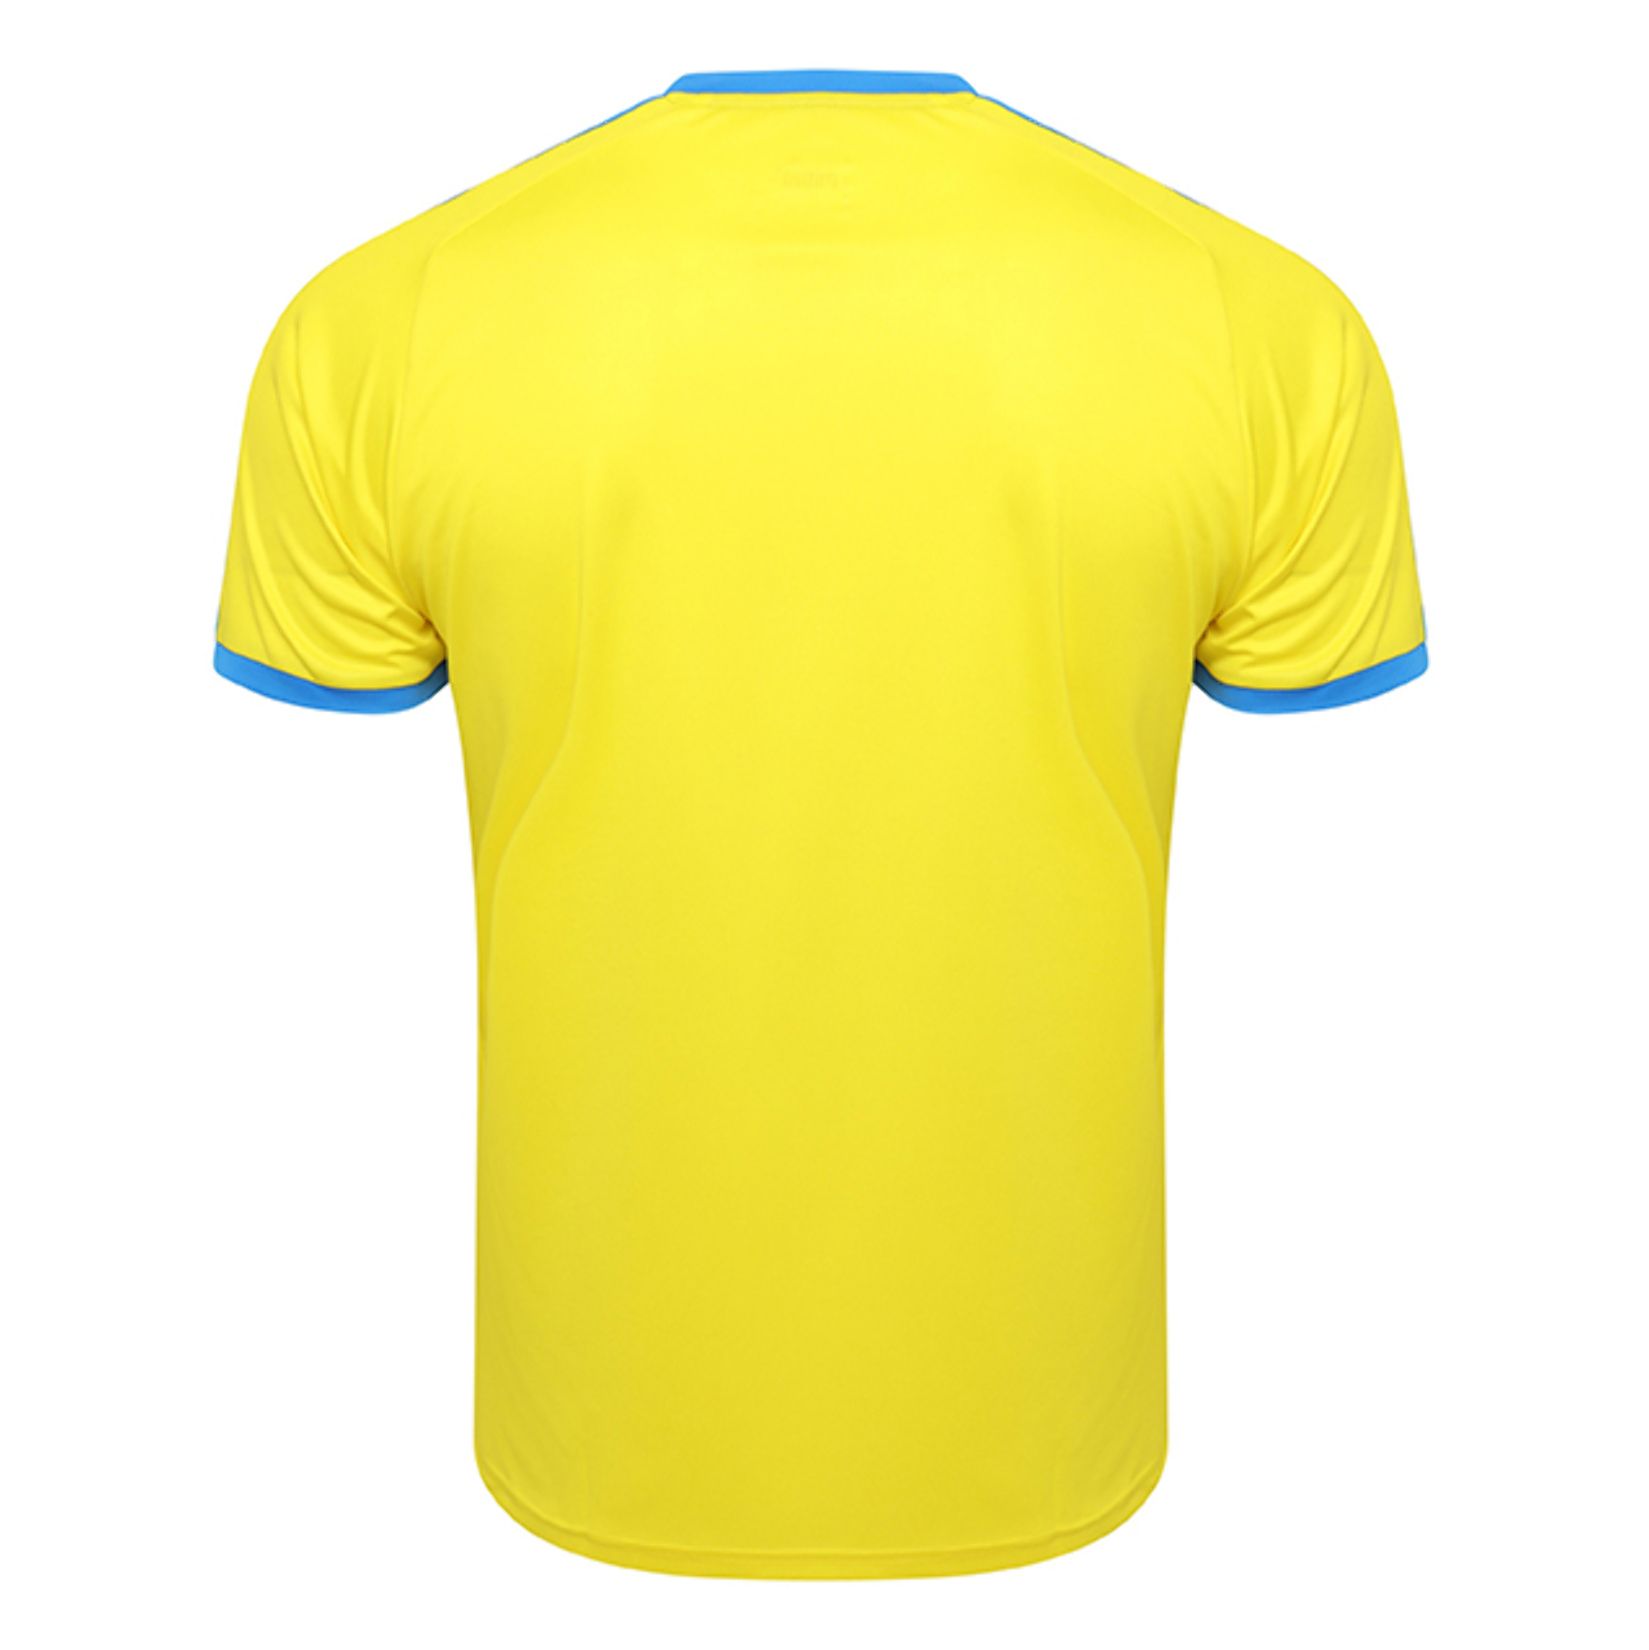 Puma Liga Short Sleeve Jersey - Kitlocker.com